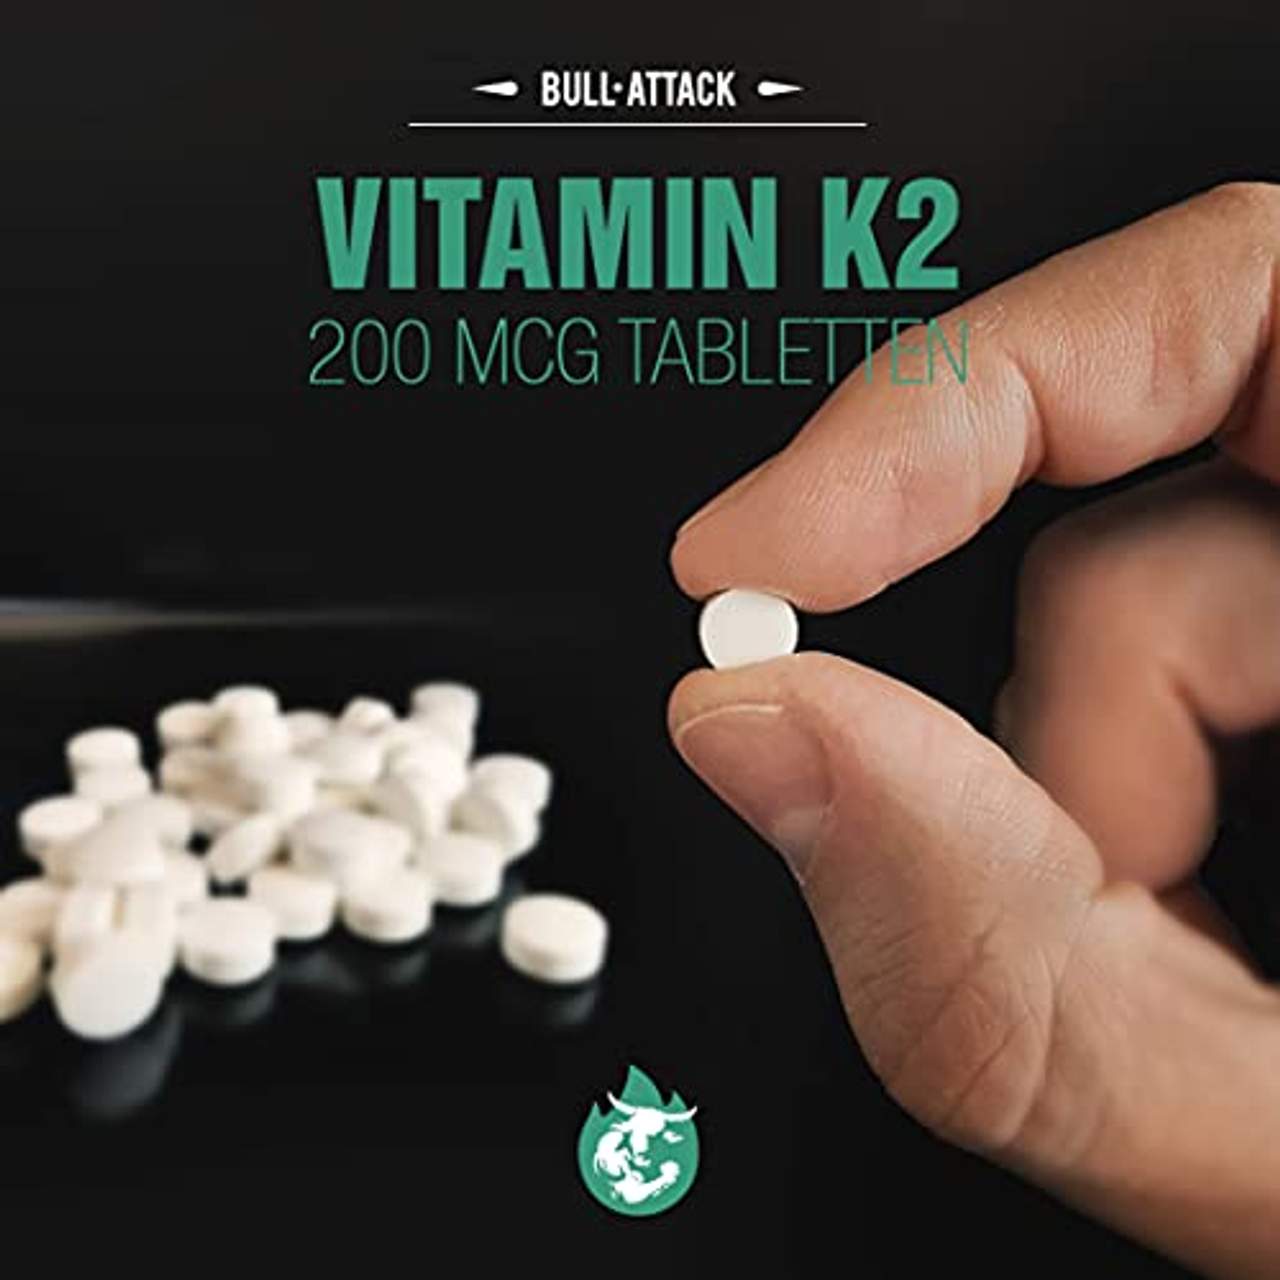 Vitamin K2 Tabletten Hochdosiert